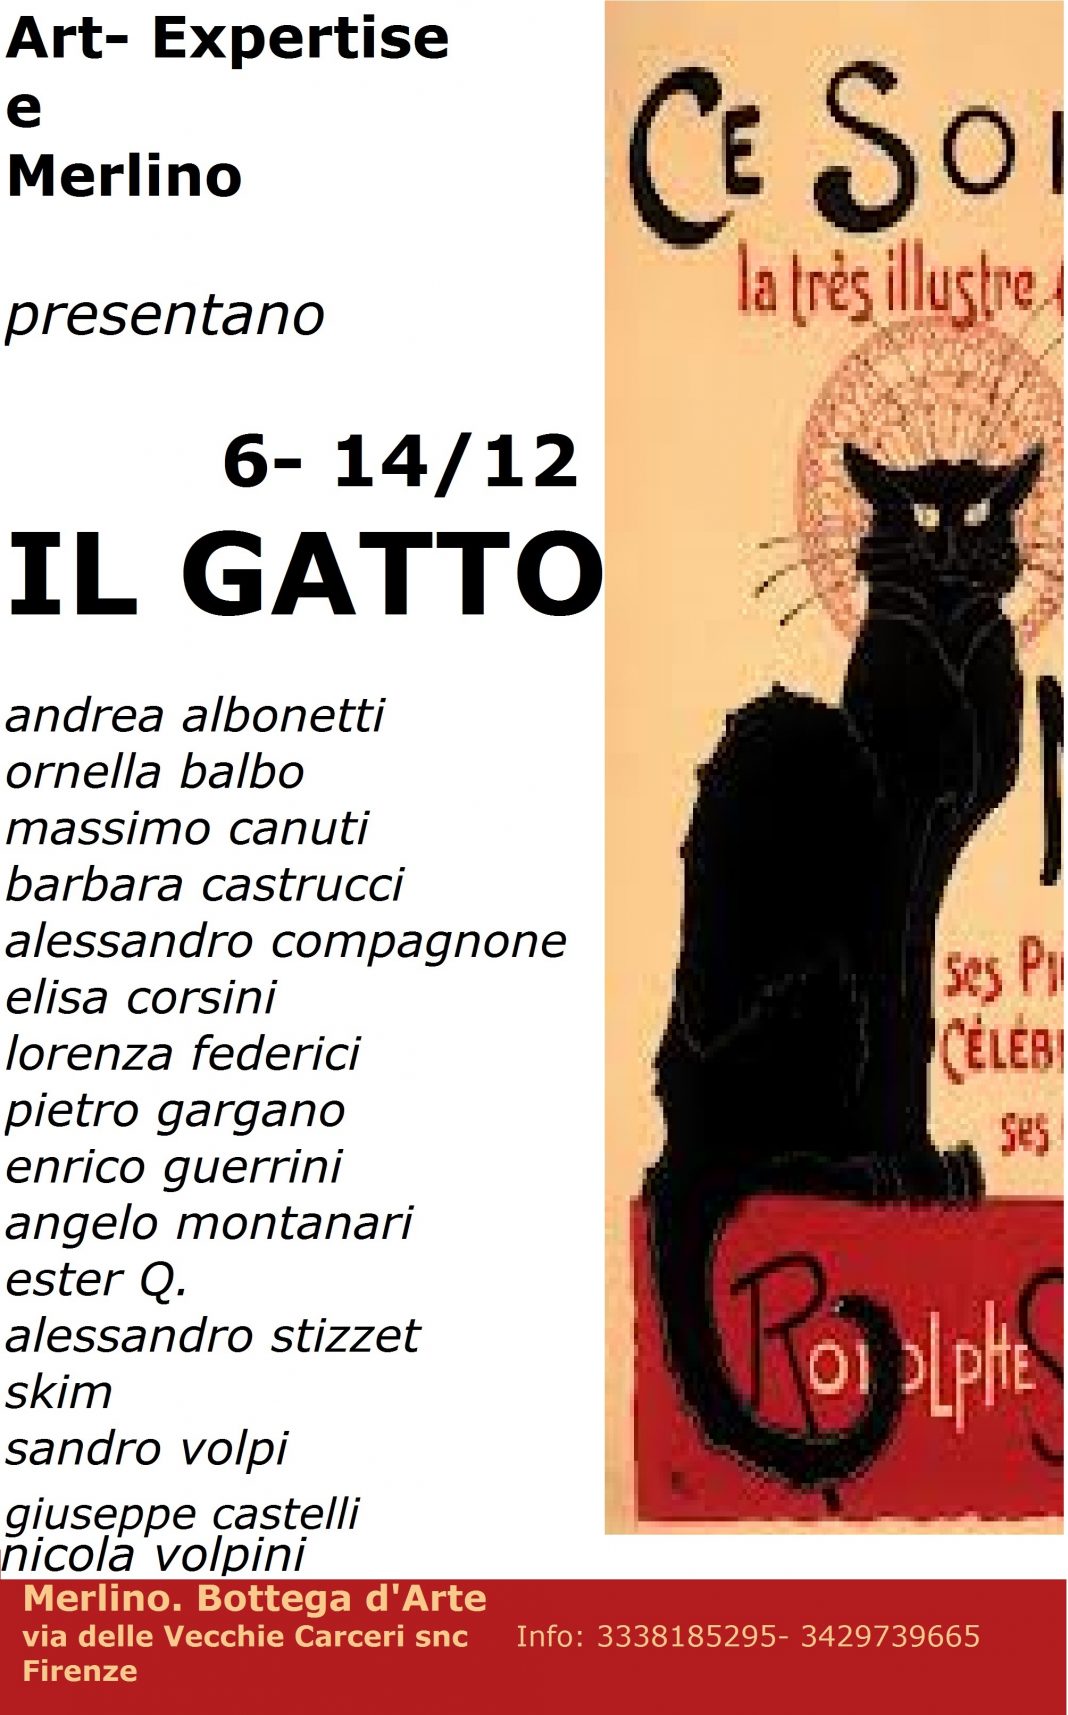 IL GATTOhttps://www.exibart.com/repository/media/eventi/2013/11/il-gatto-1068x1715.jpg